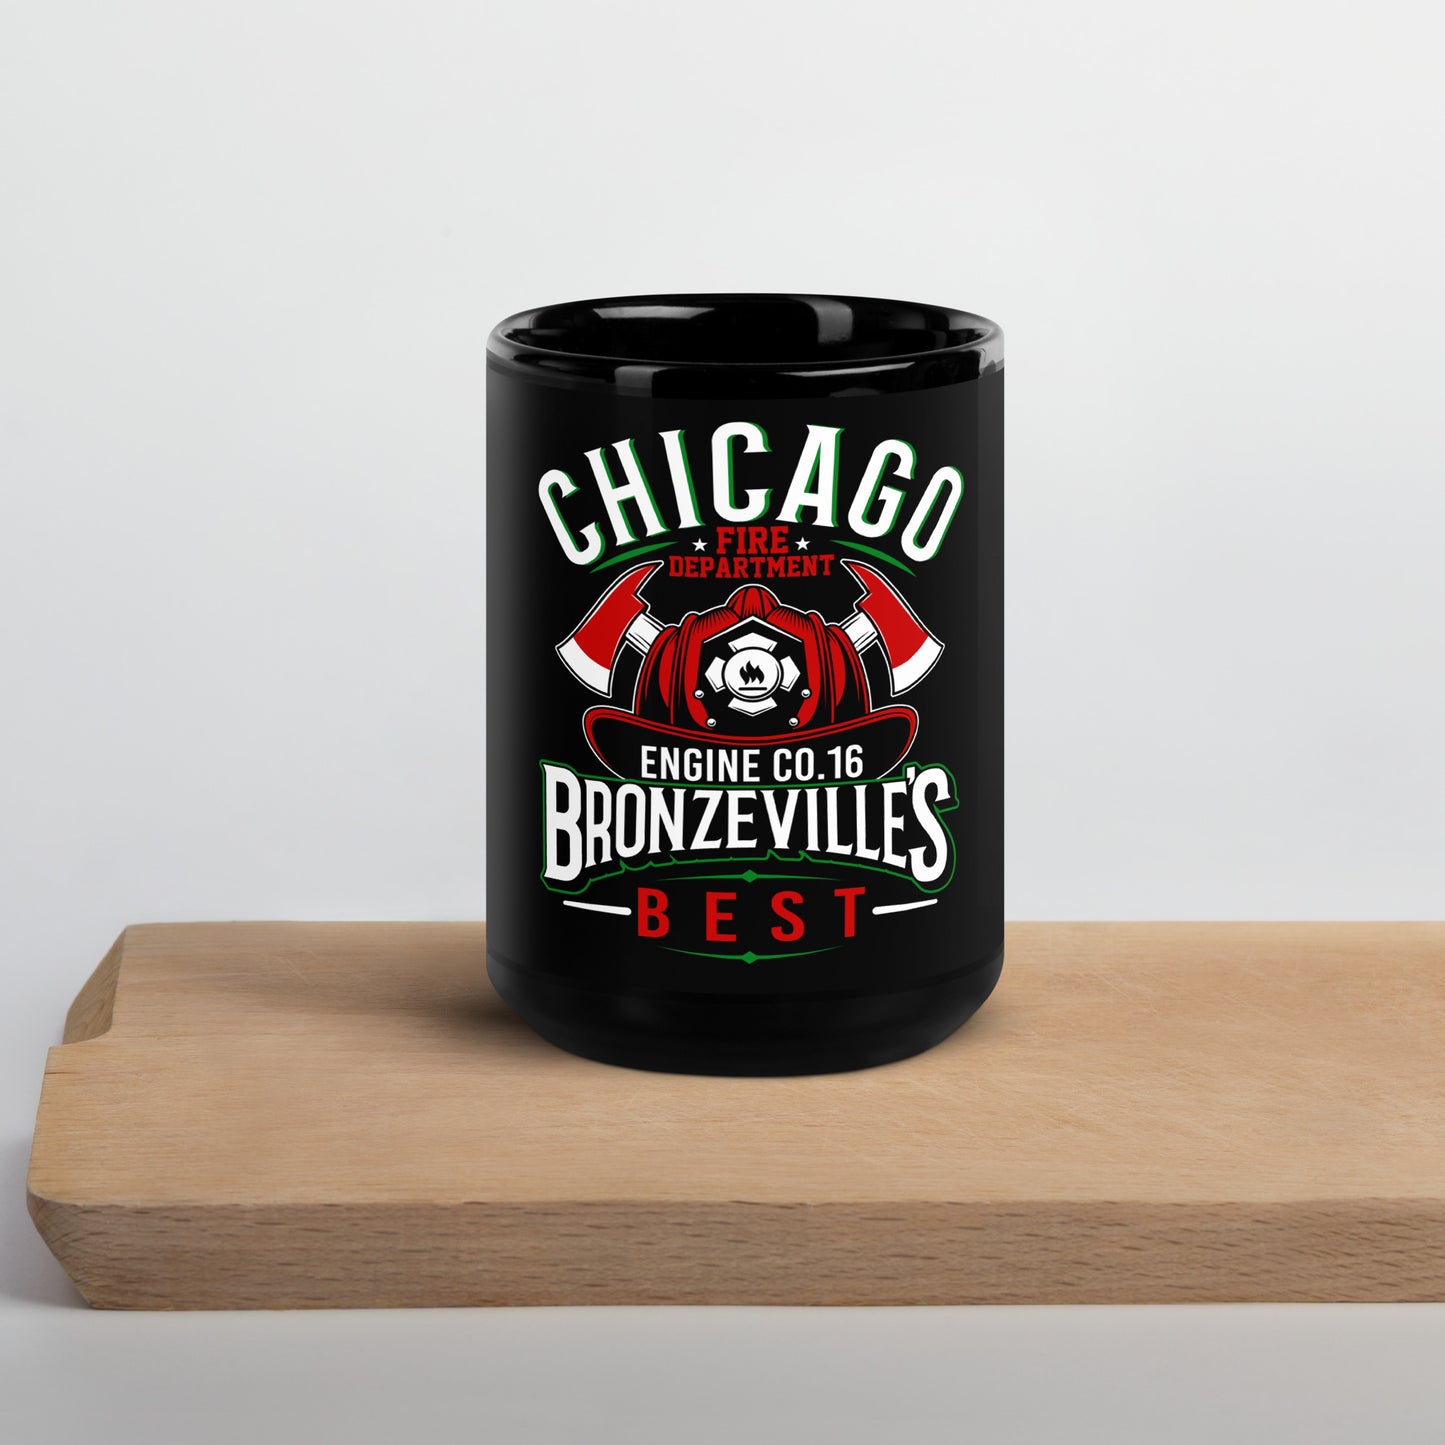 Black Glossy Mug "Chicago Fire Department E16"